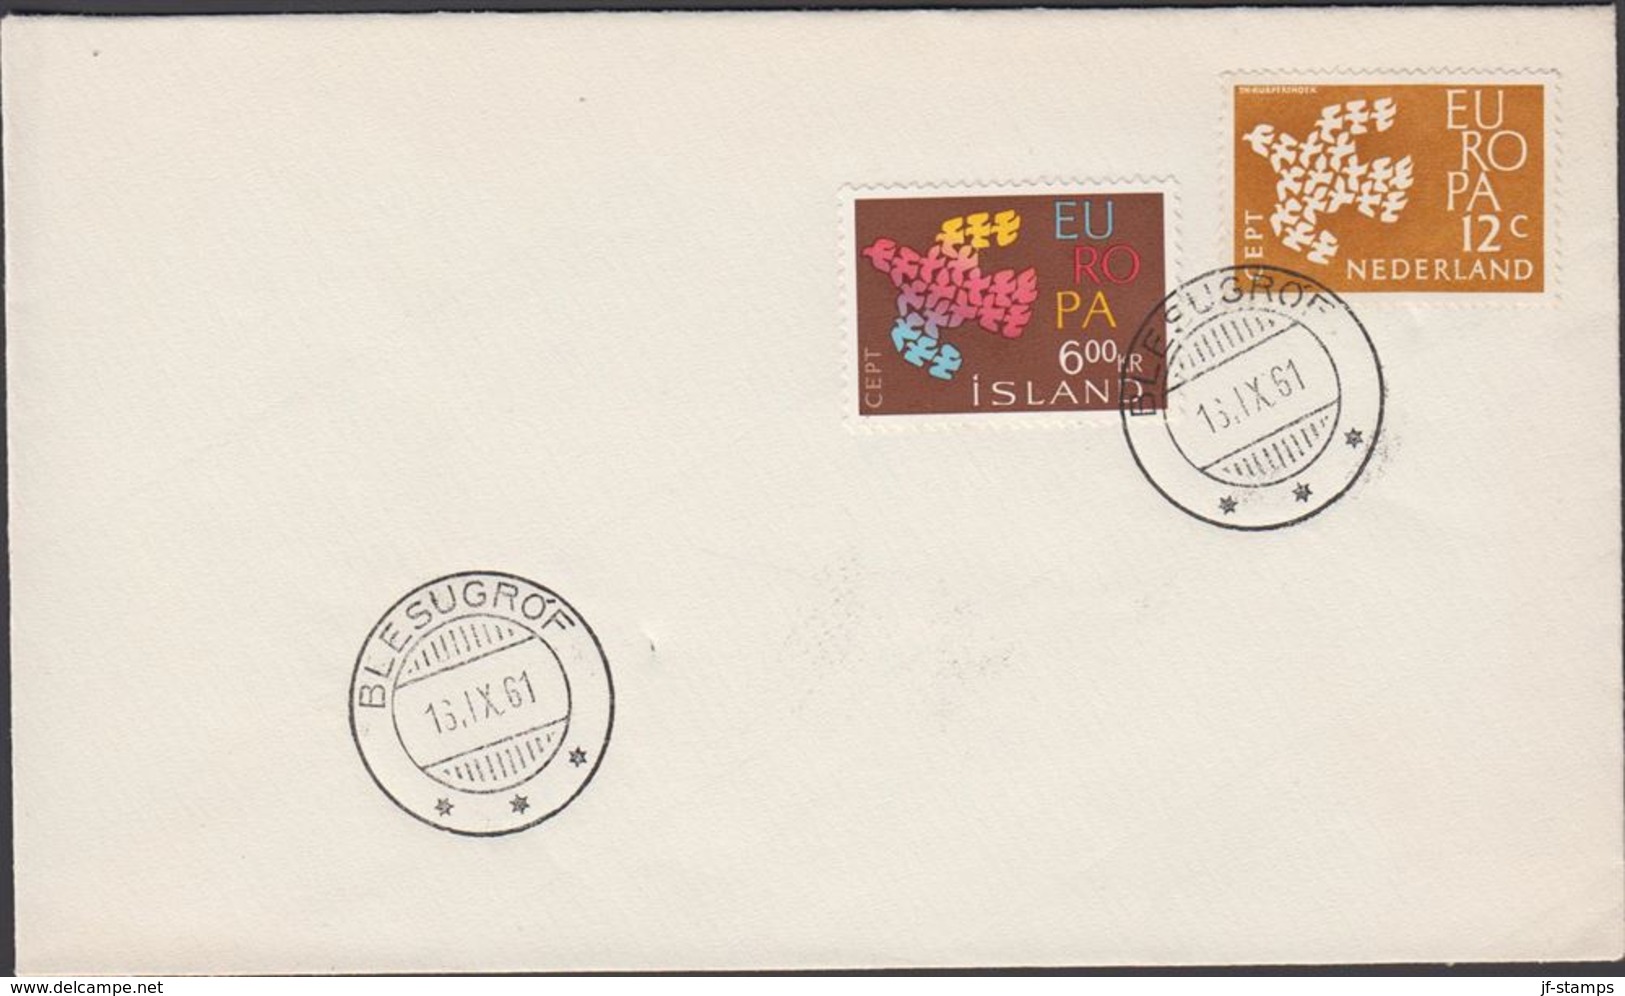 BLESUGROF 16. IX. 61 1961. Europe. CEPT. 6 Kr. + 12 C. NEDERLAND (Michel 355) - JF310158 - Storia Postale